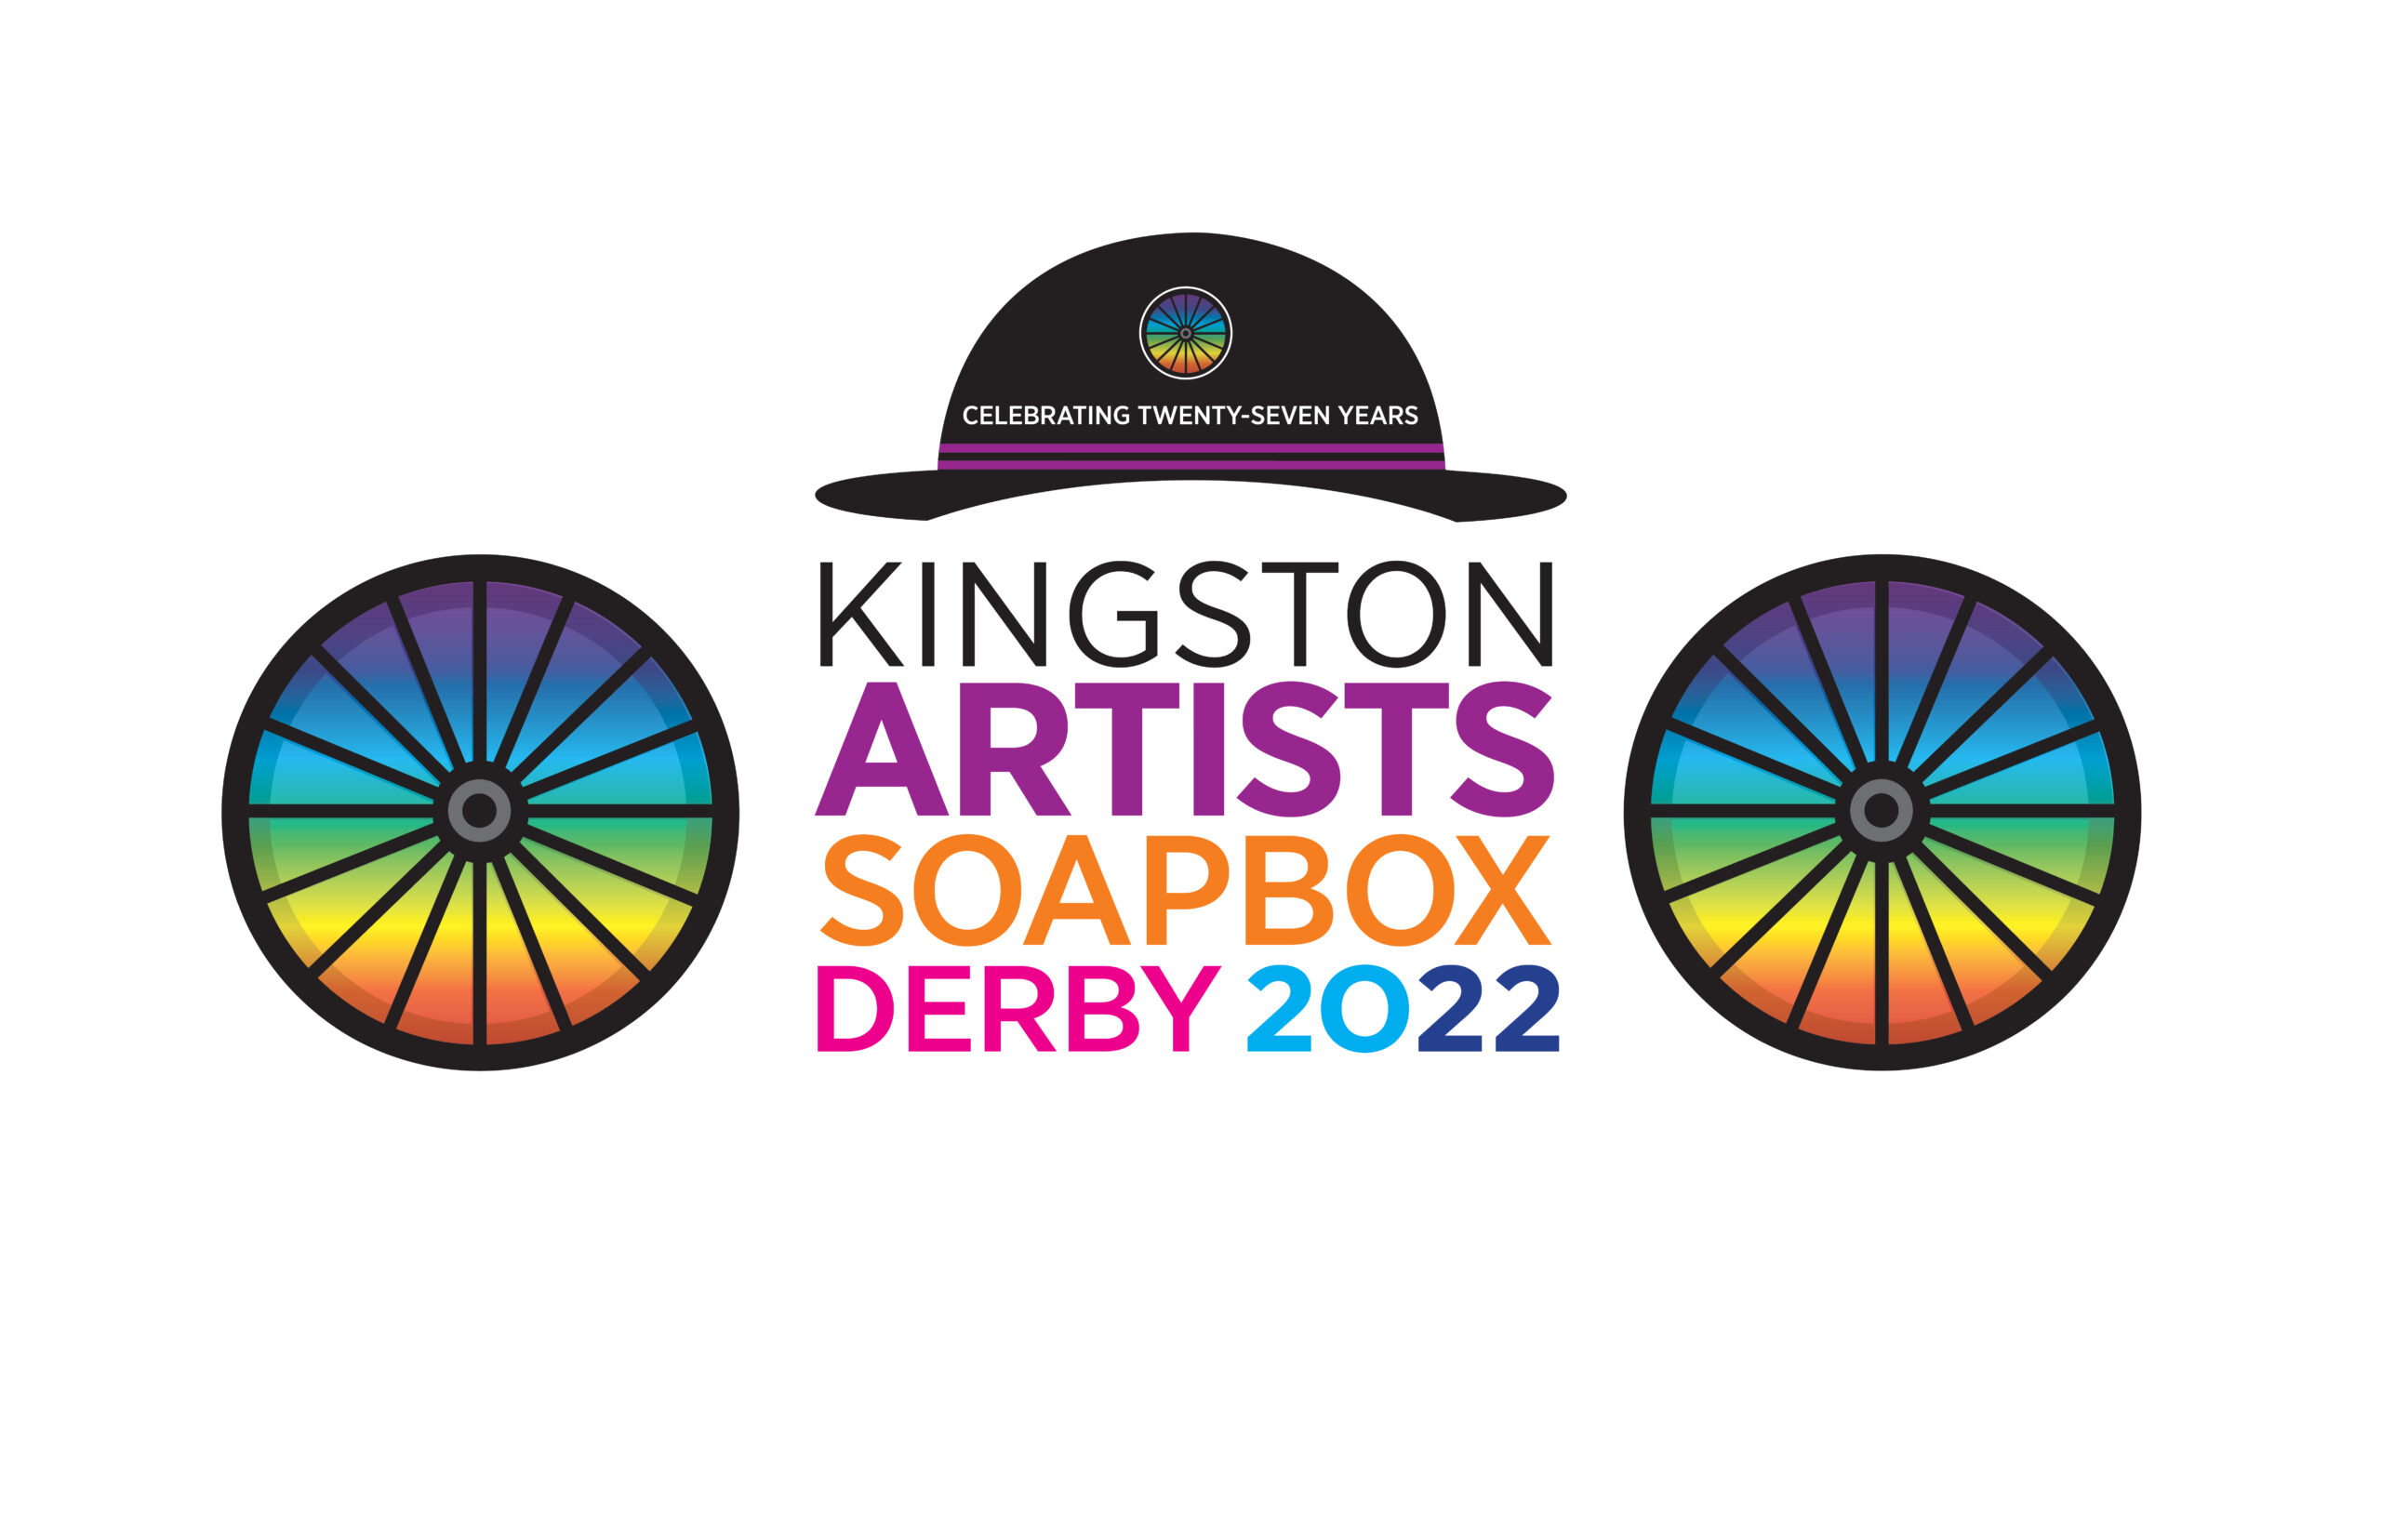 The Kingston Artists Soapbox Derby